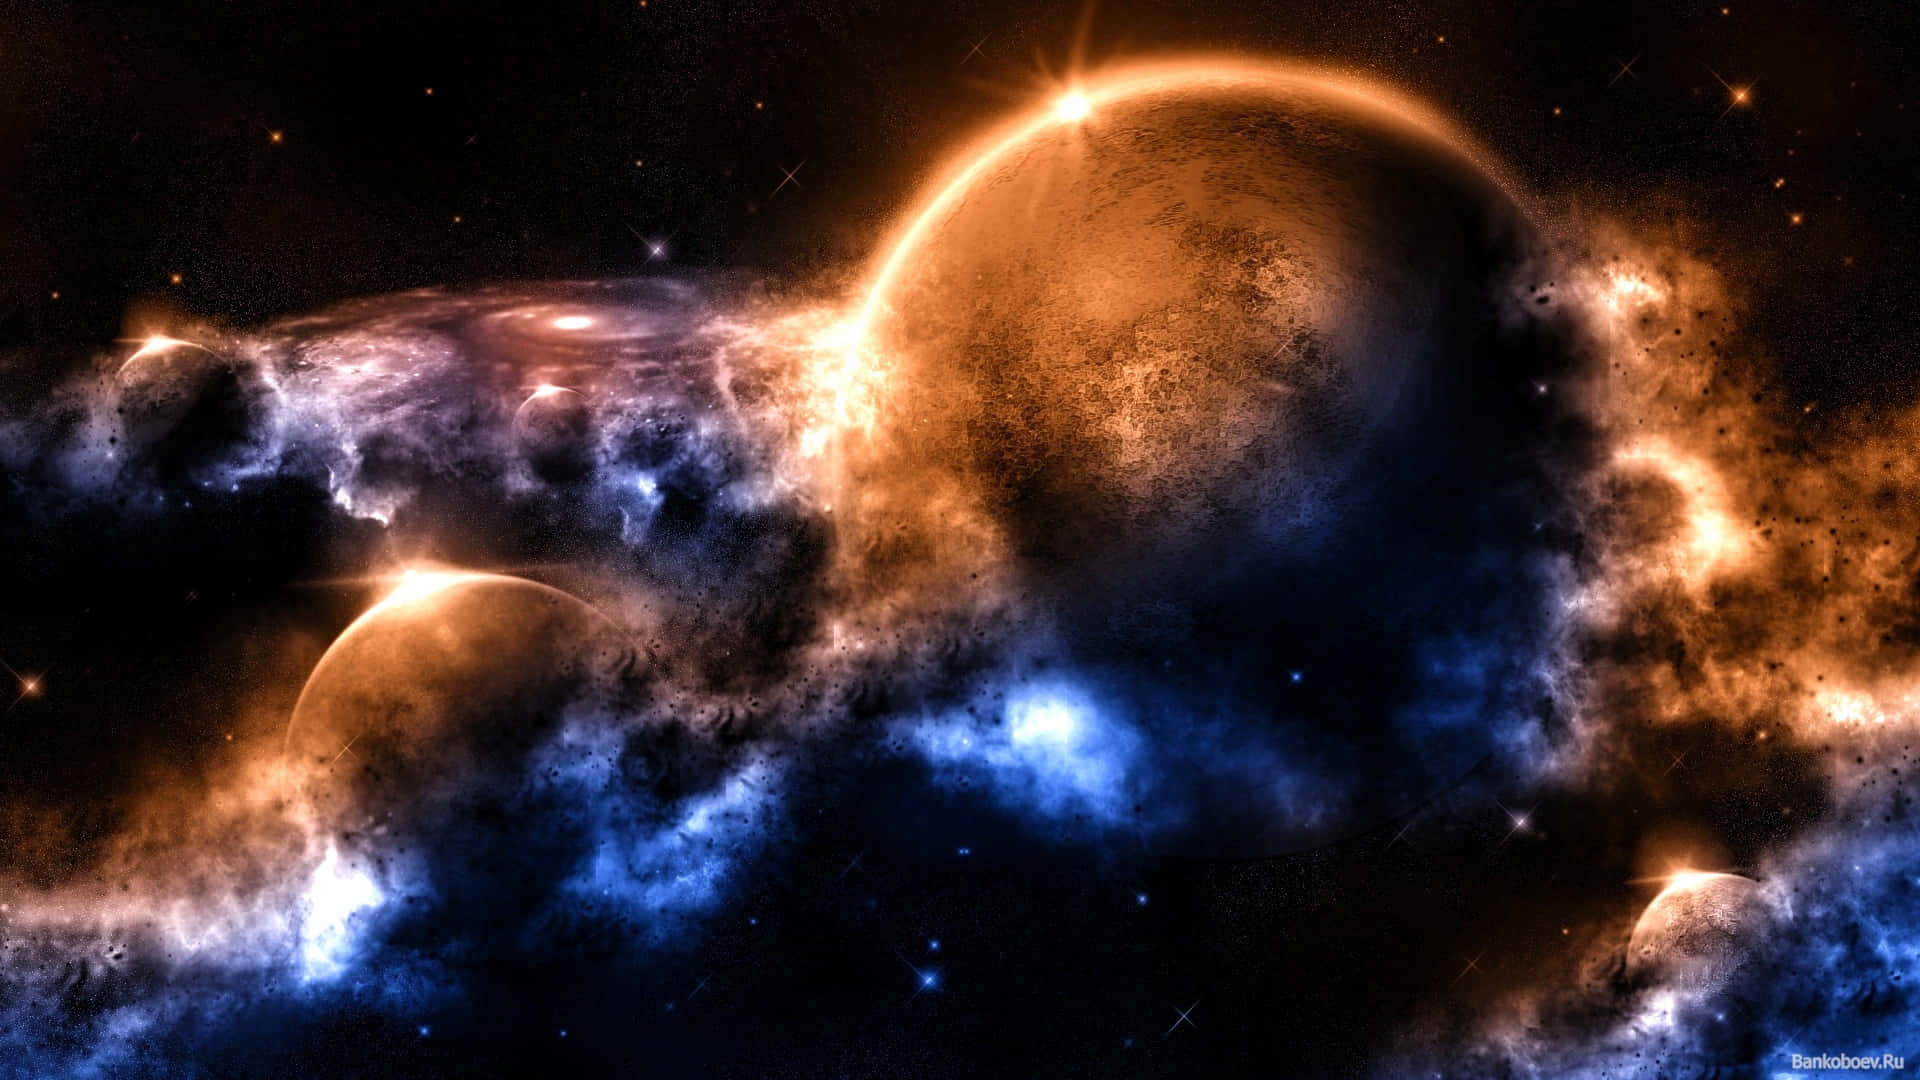 Laimpresionante Belleza De Los Rayos Cósmicos Iluminando El Cielo Nocturno. Fondo de pantalla